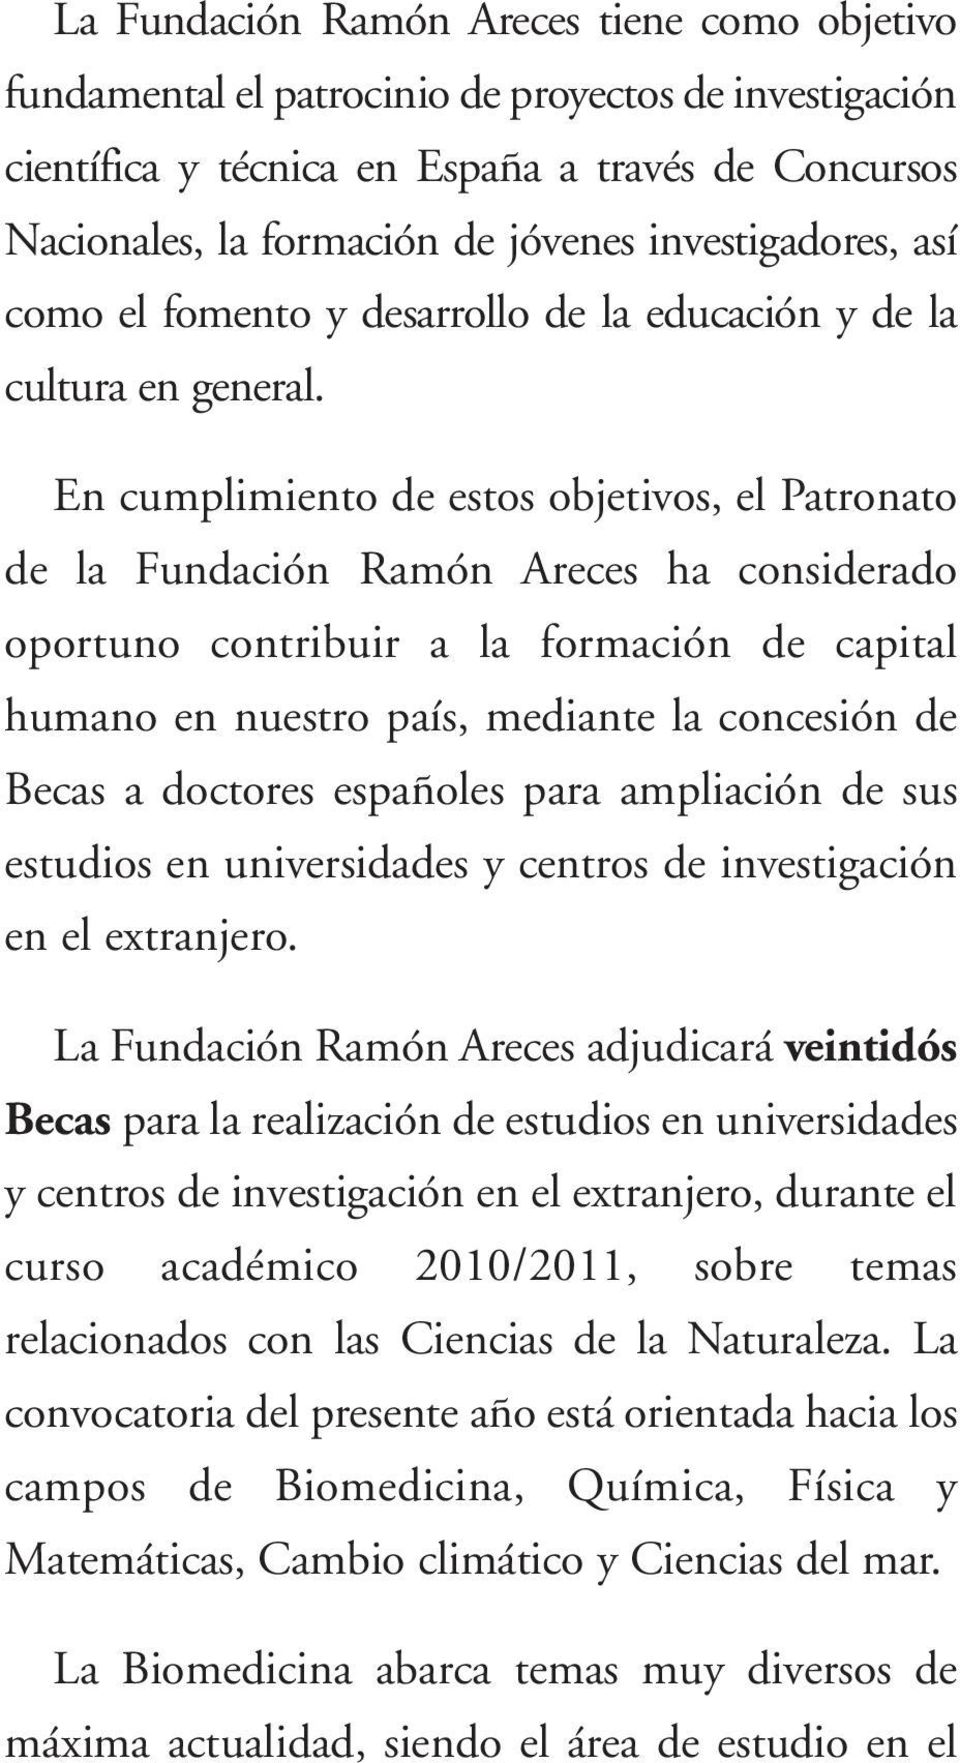 En cumplimiento de estos objetivos, el Patronato de la Fundación Ramón Areces ha considerado oportuno contribuir a la formación de capital humano en nuestro país, mediante la concesión de Becas a